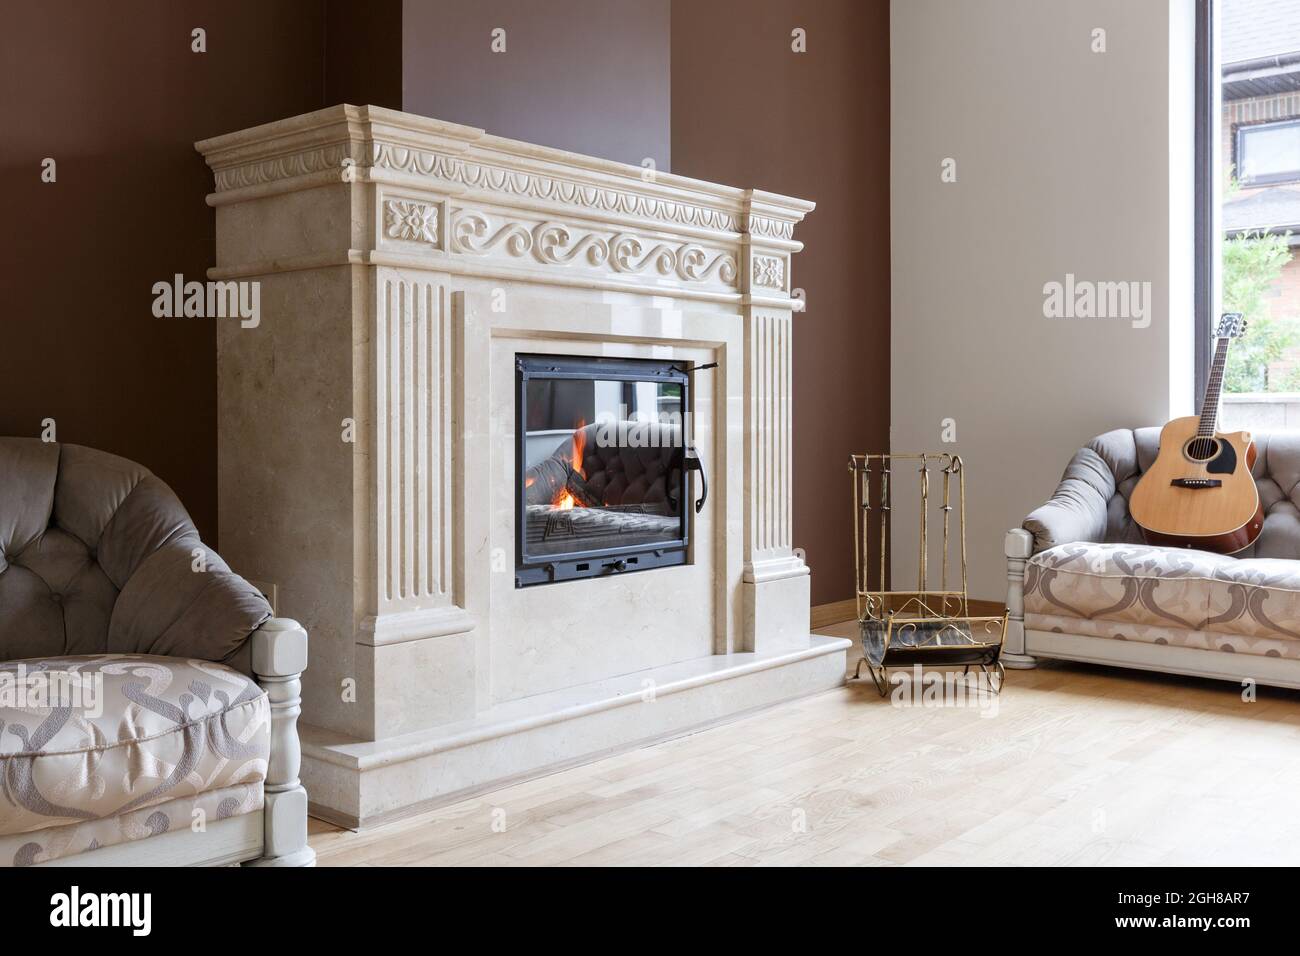 Cheminée en marbre blanc de style classique avec intérieur en bois. Concept de design intérieur Banque D'Images